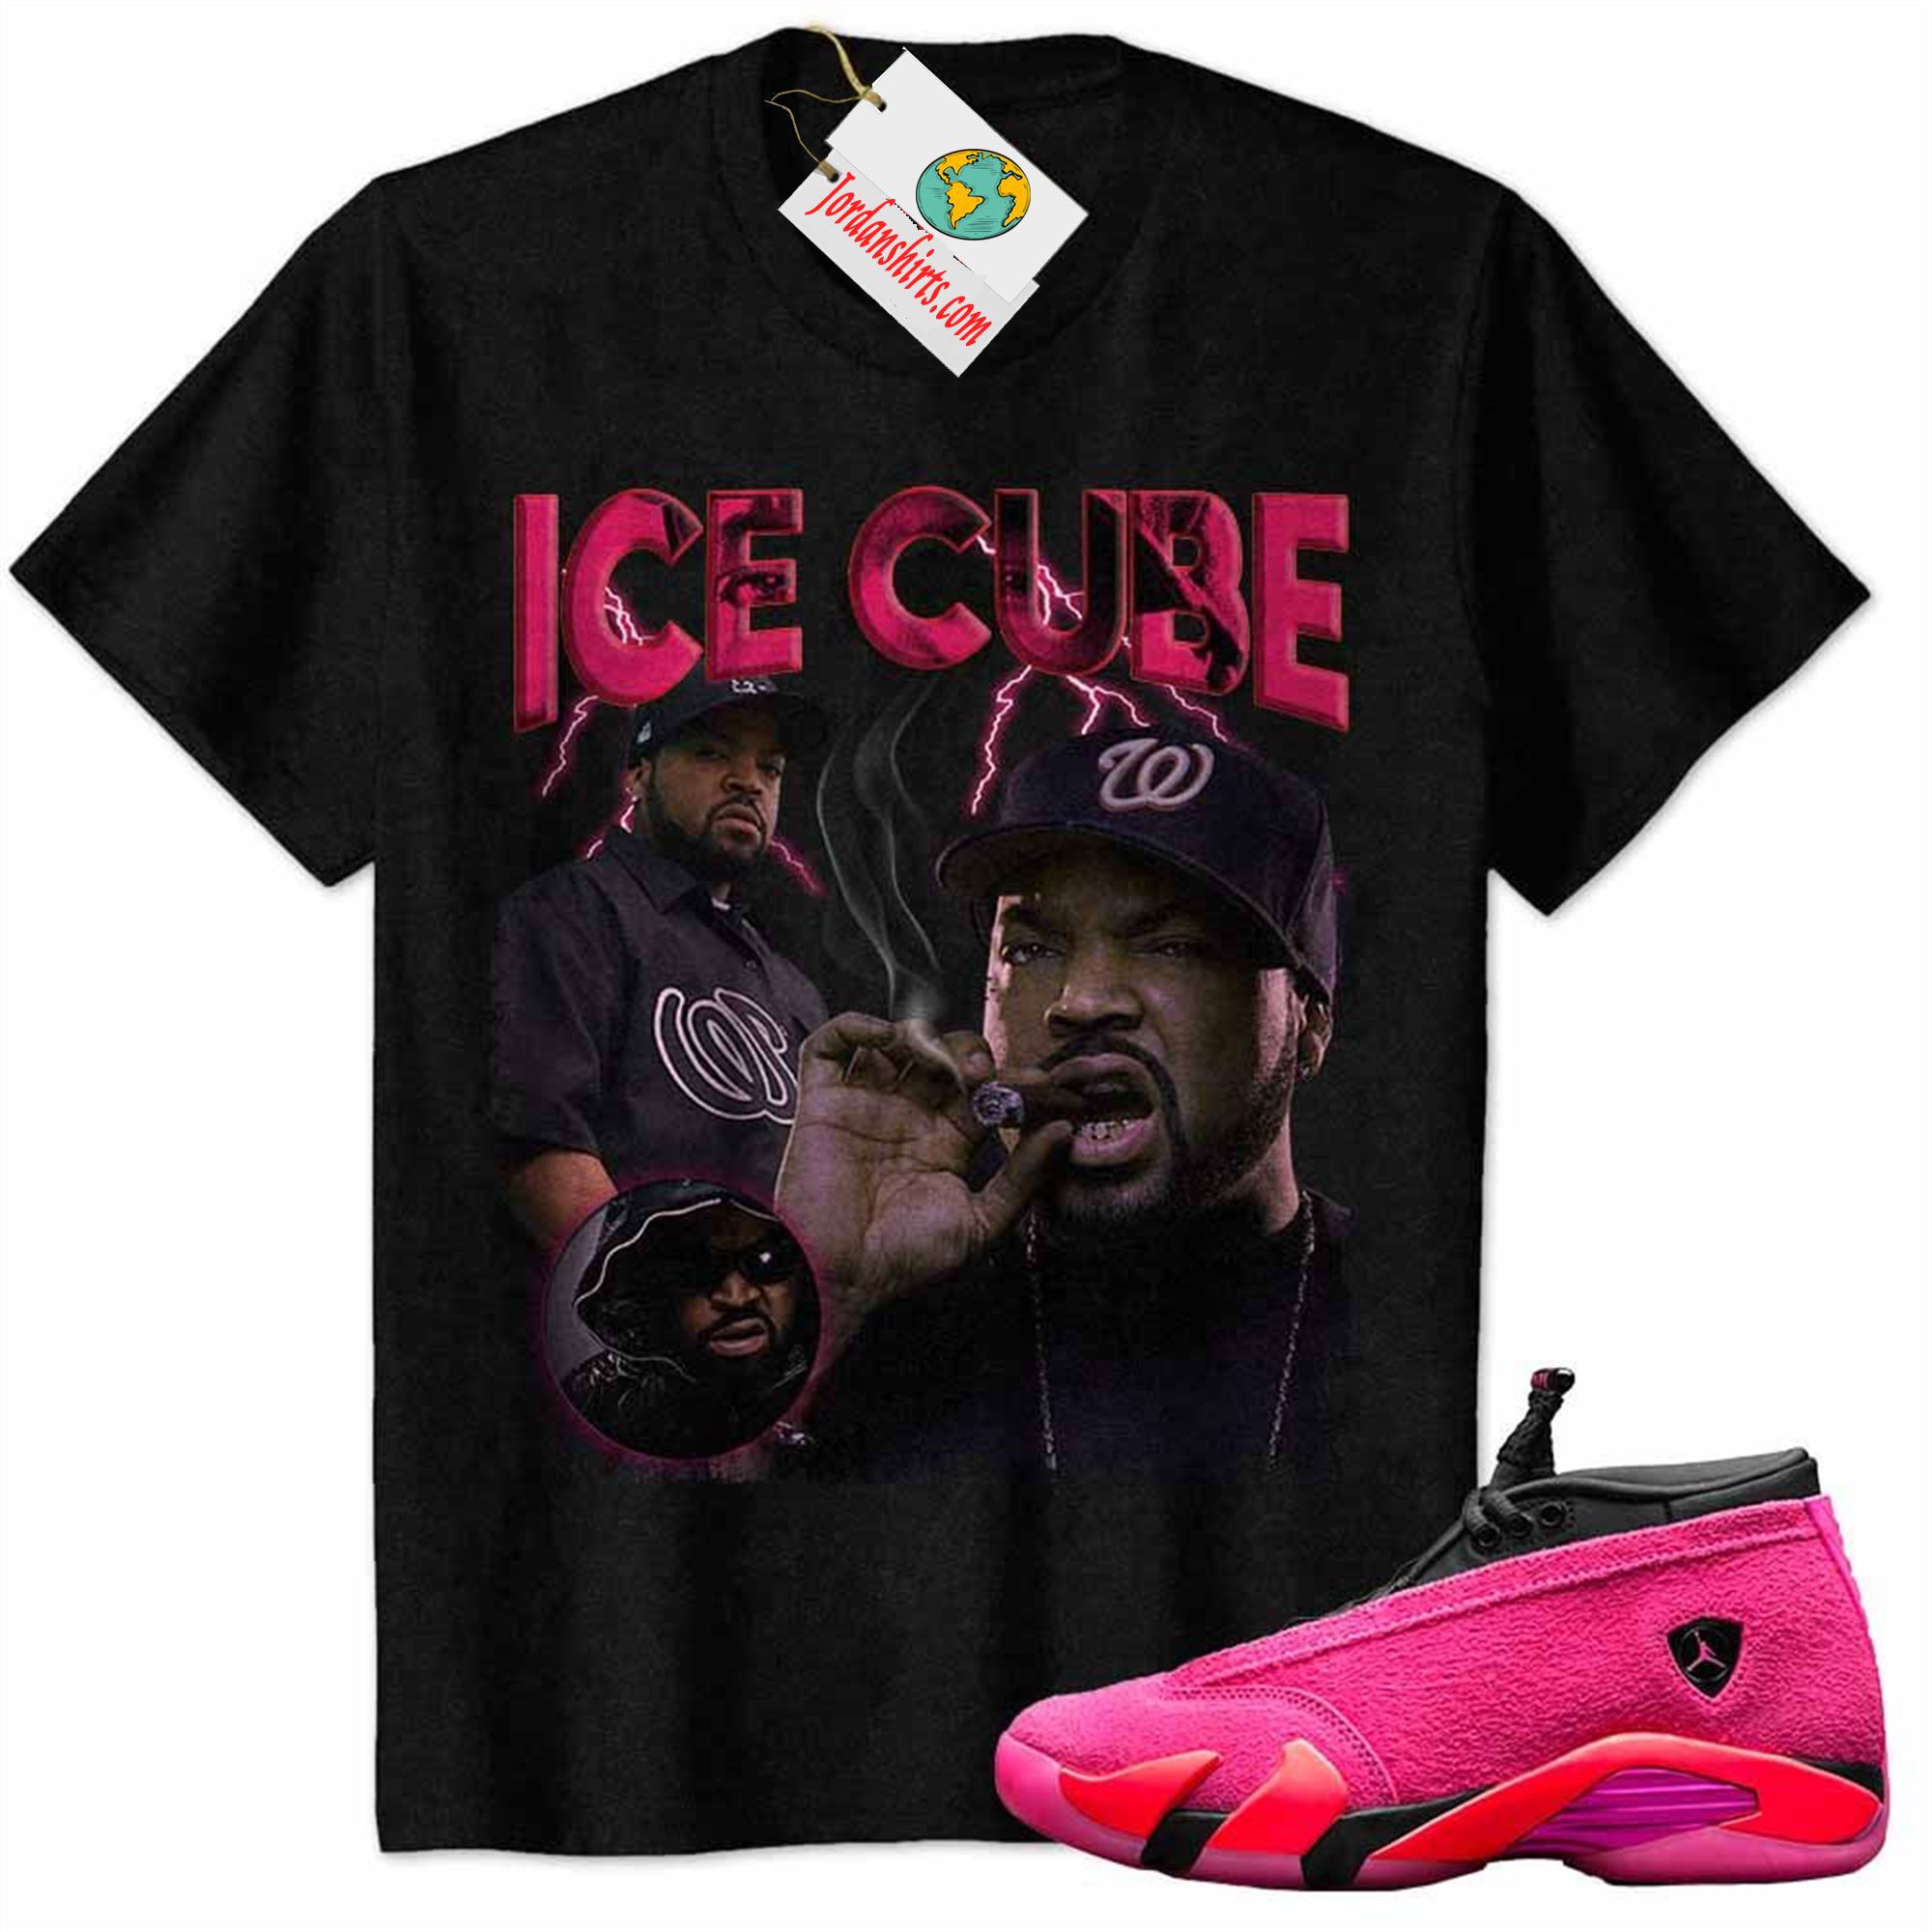 Jordan 14 Shirt, Ice Cube Black Air Jordan 14 Wmns Shocking Pink 14s Full Size Up To 5xl